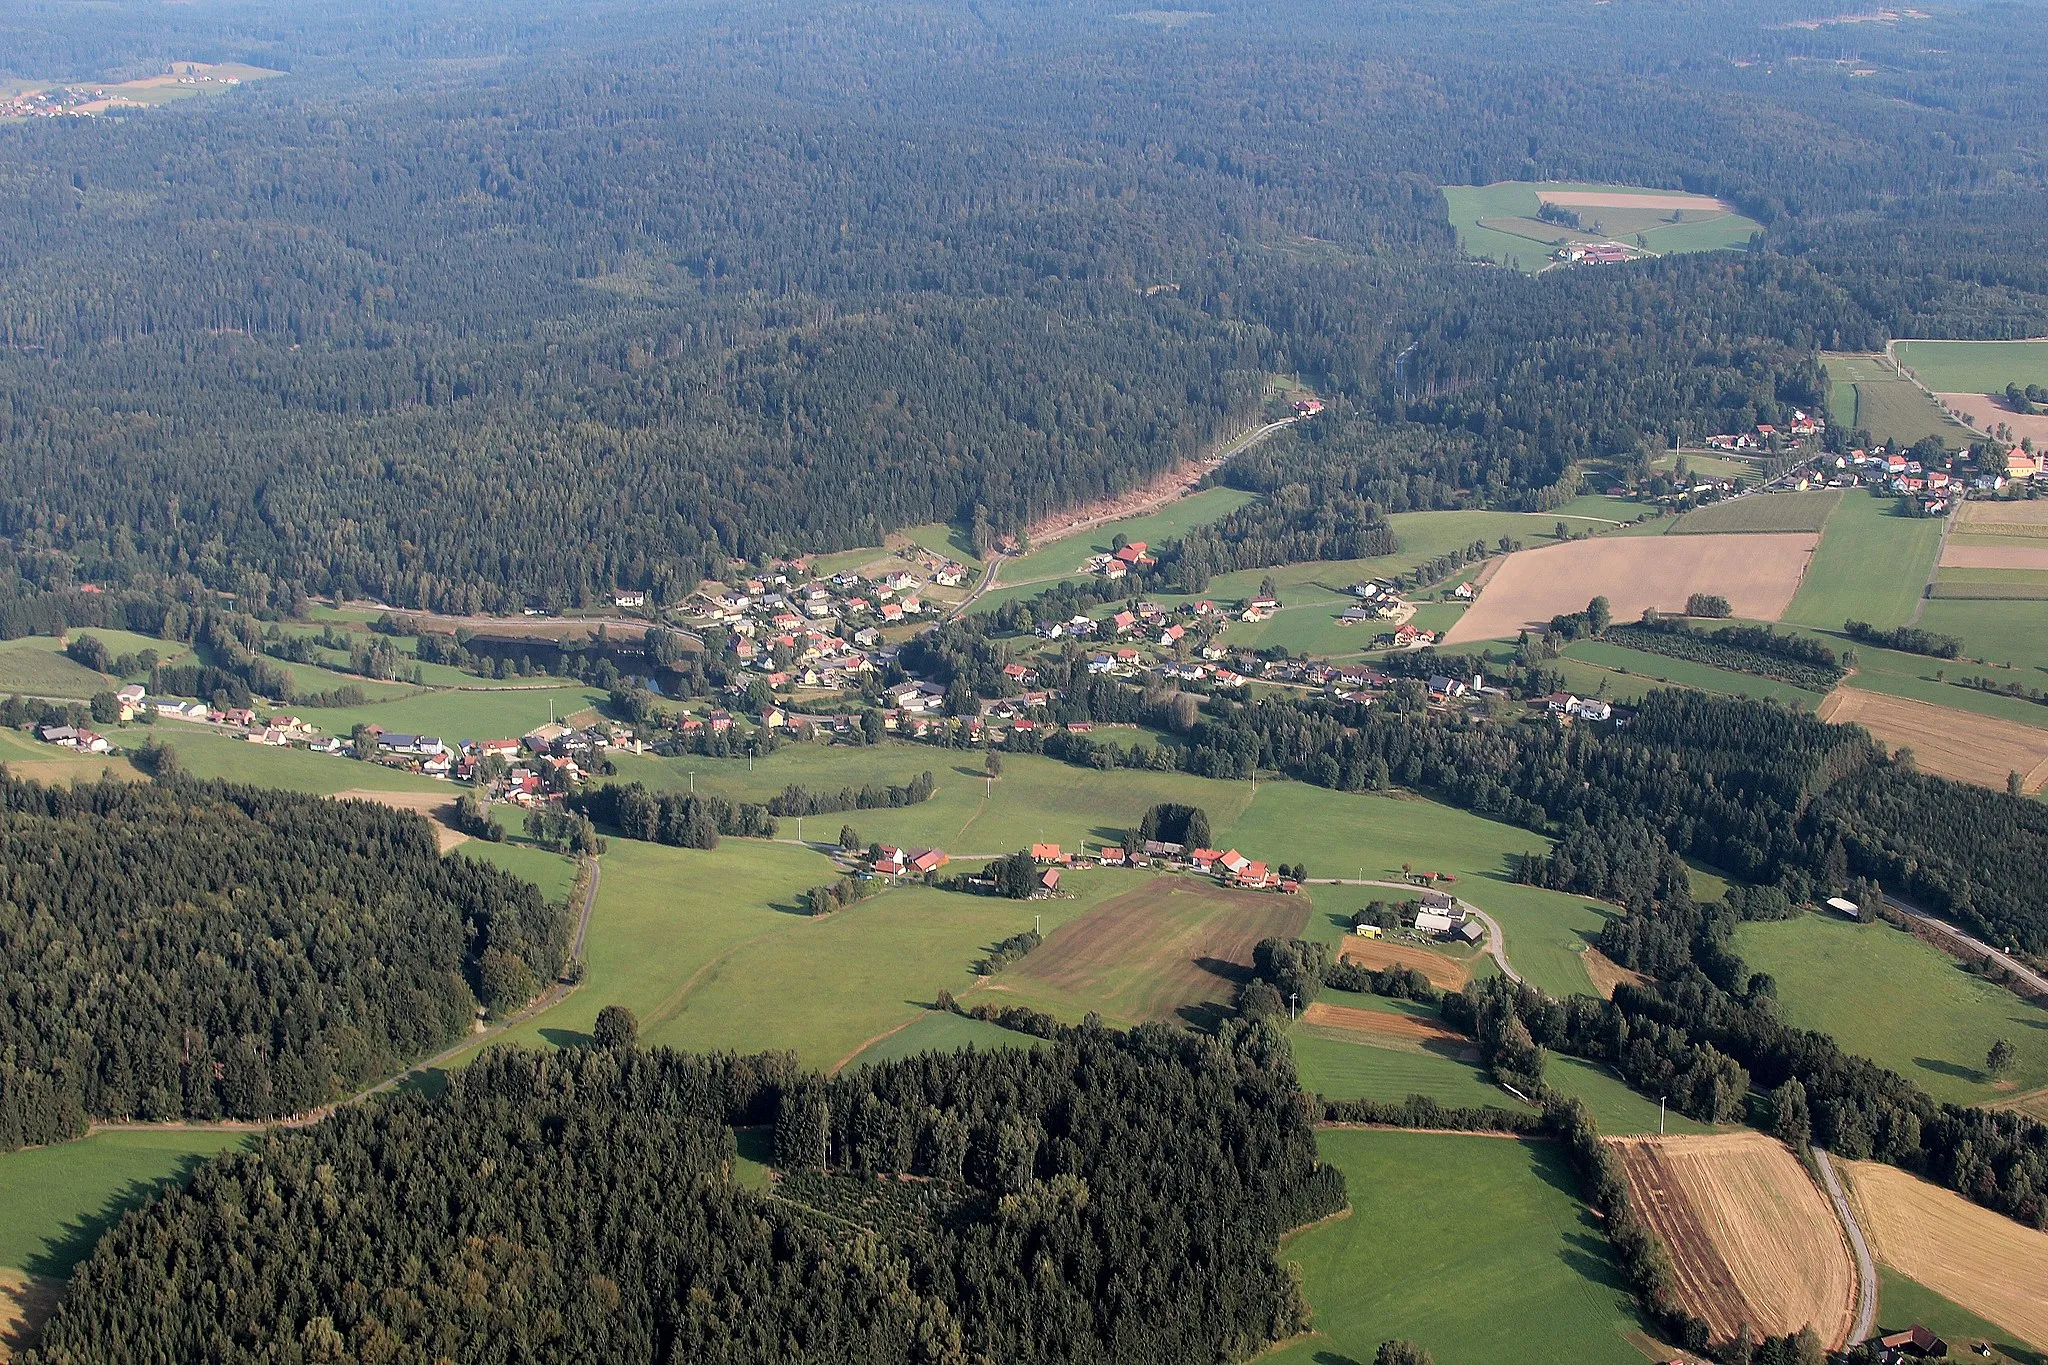 Obrázek Oberpfalz